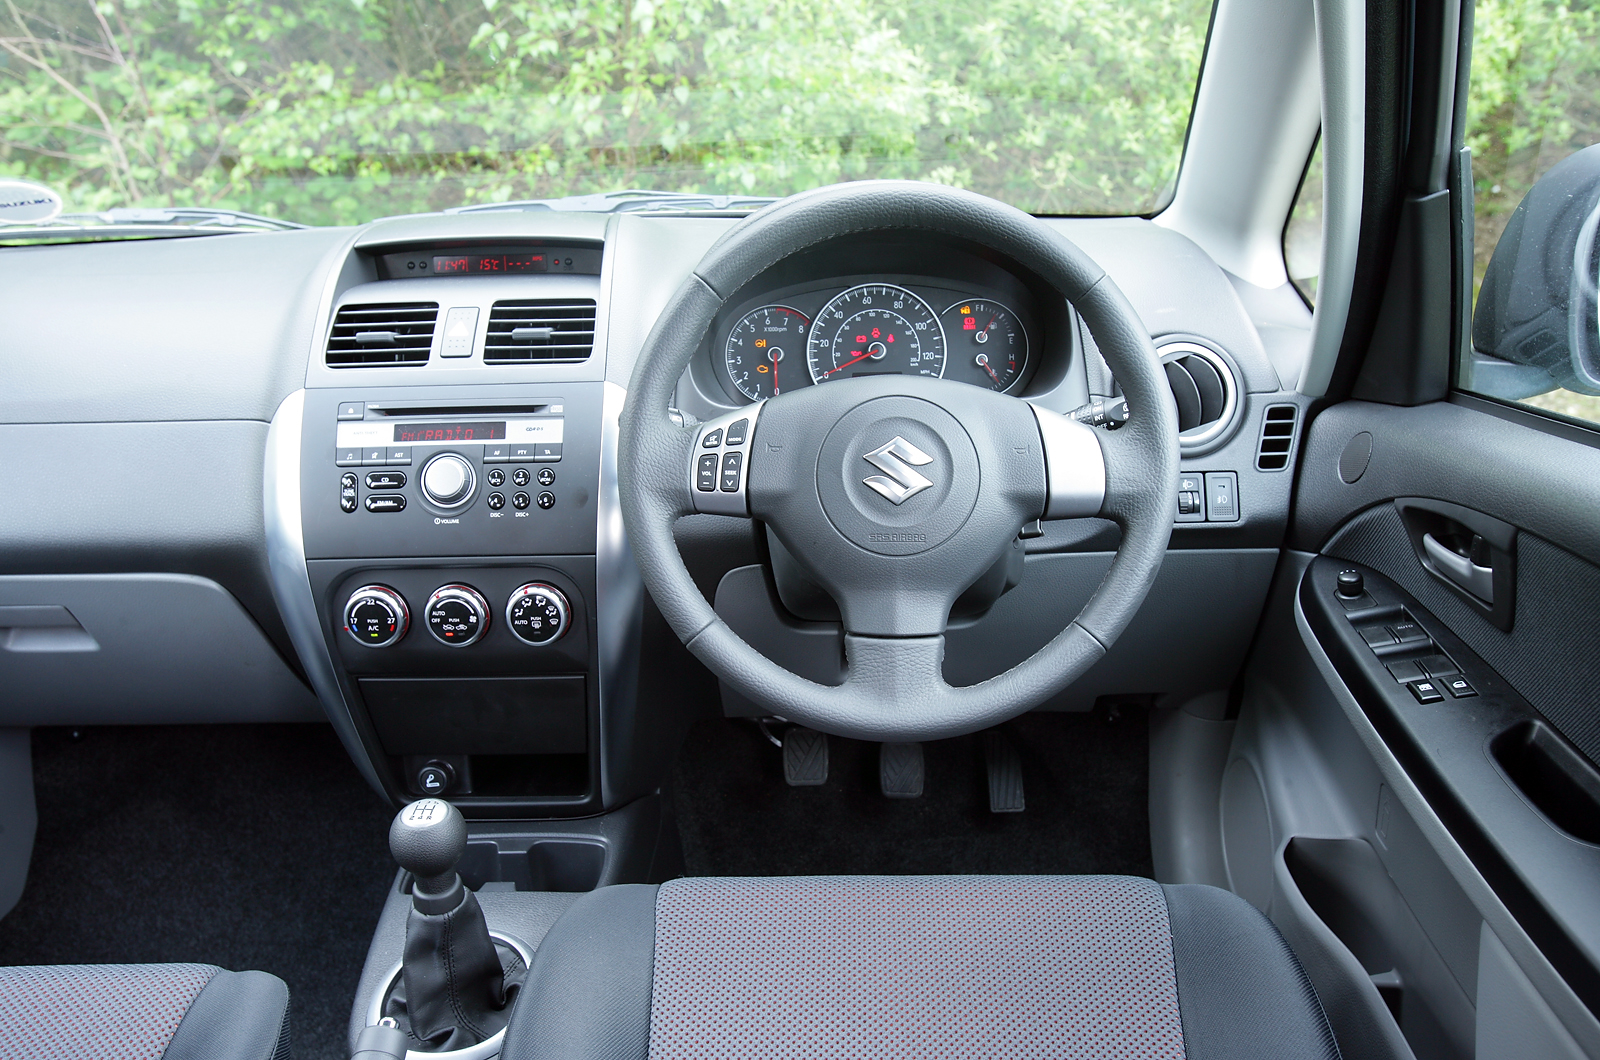 Mispend Own Warship Suzuki SX4 2006-2014 interior | Autocar